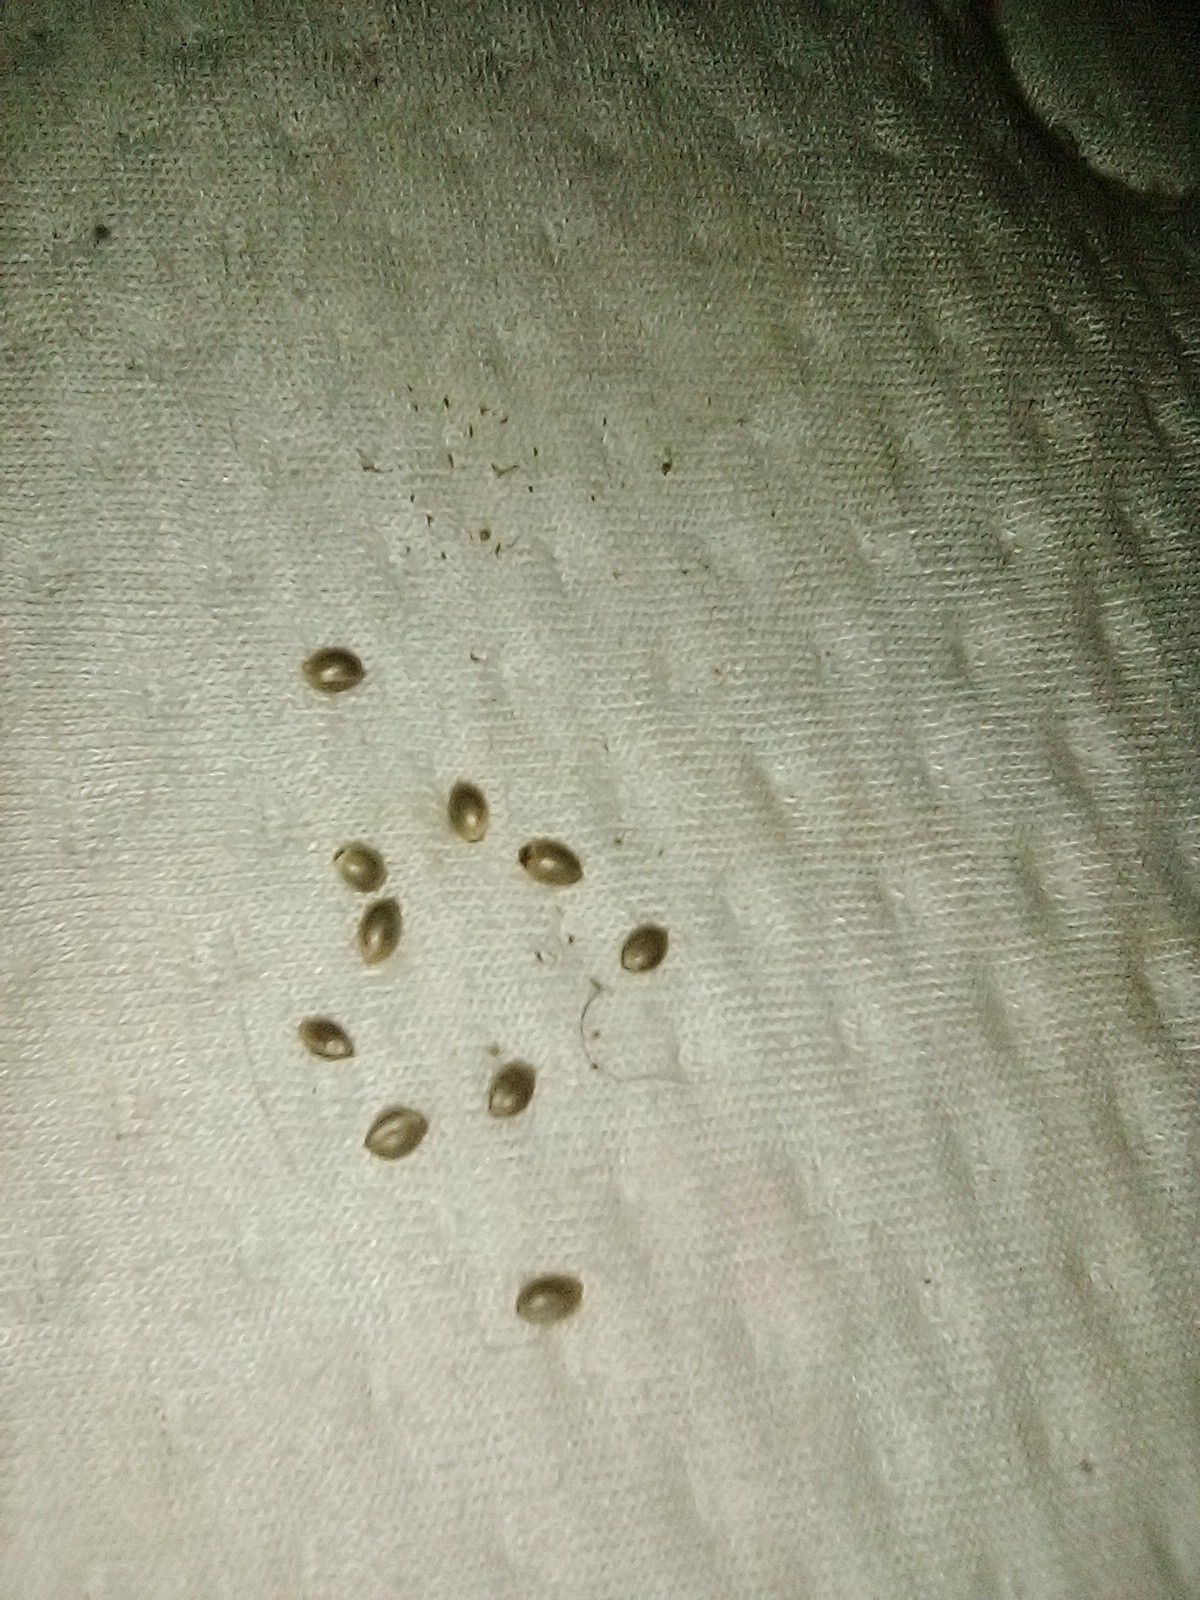 Mj Seeds